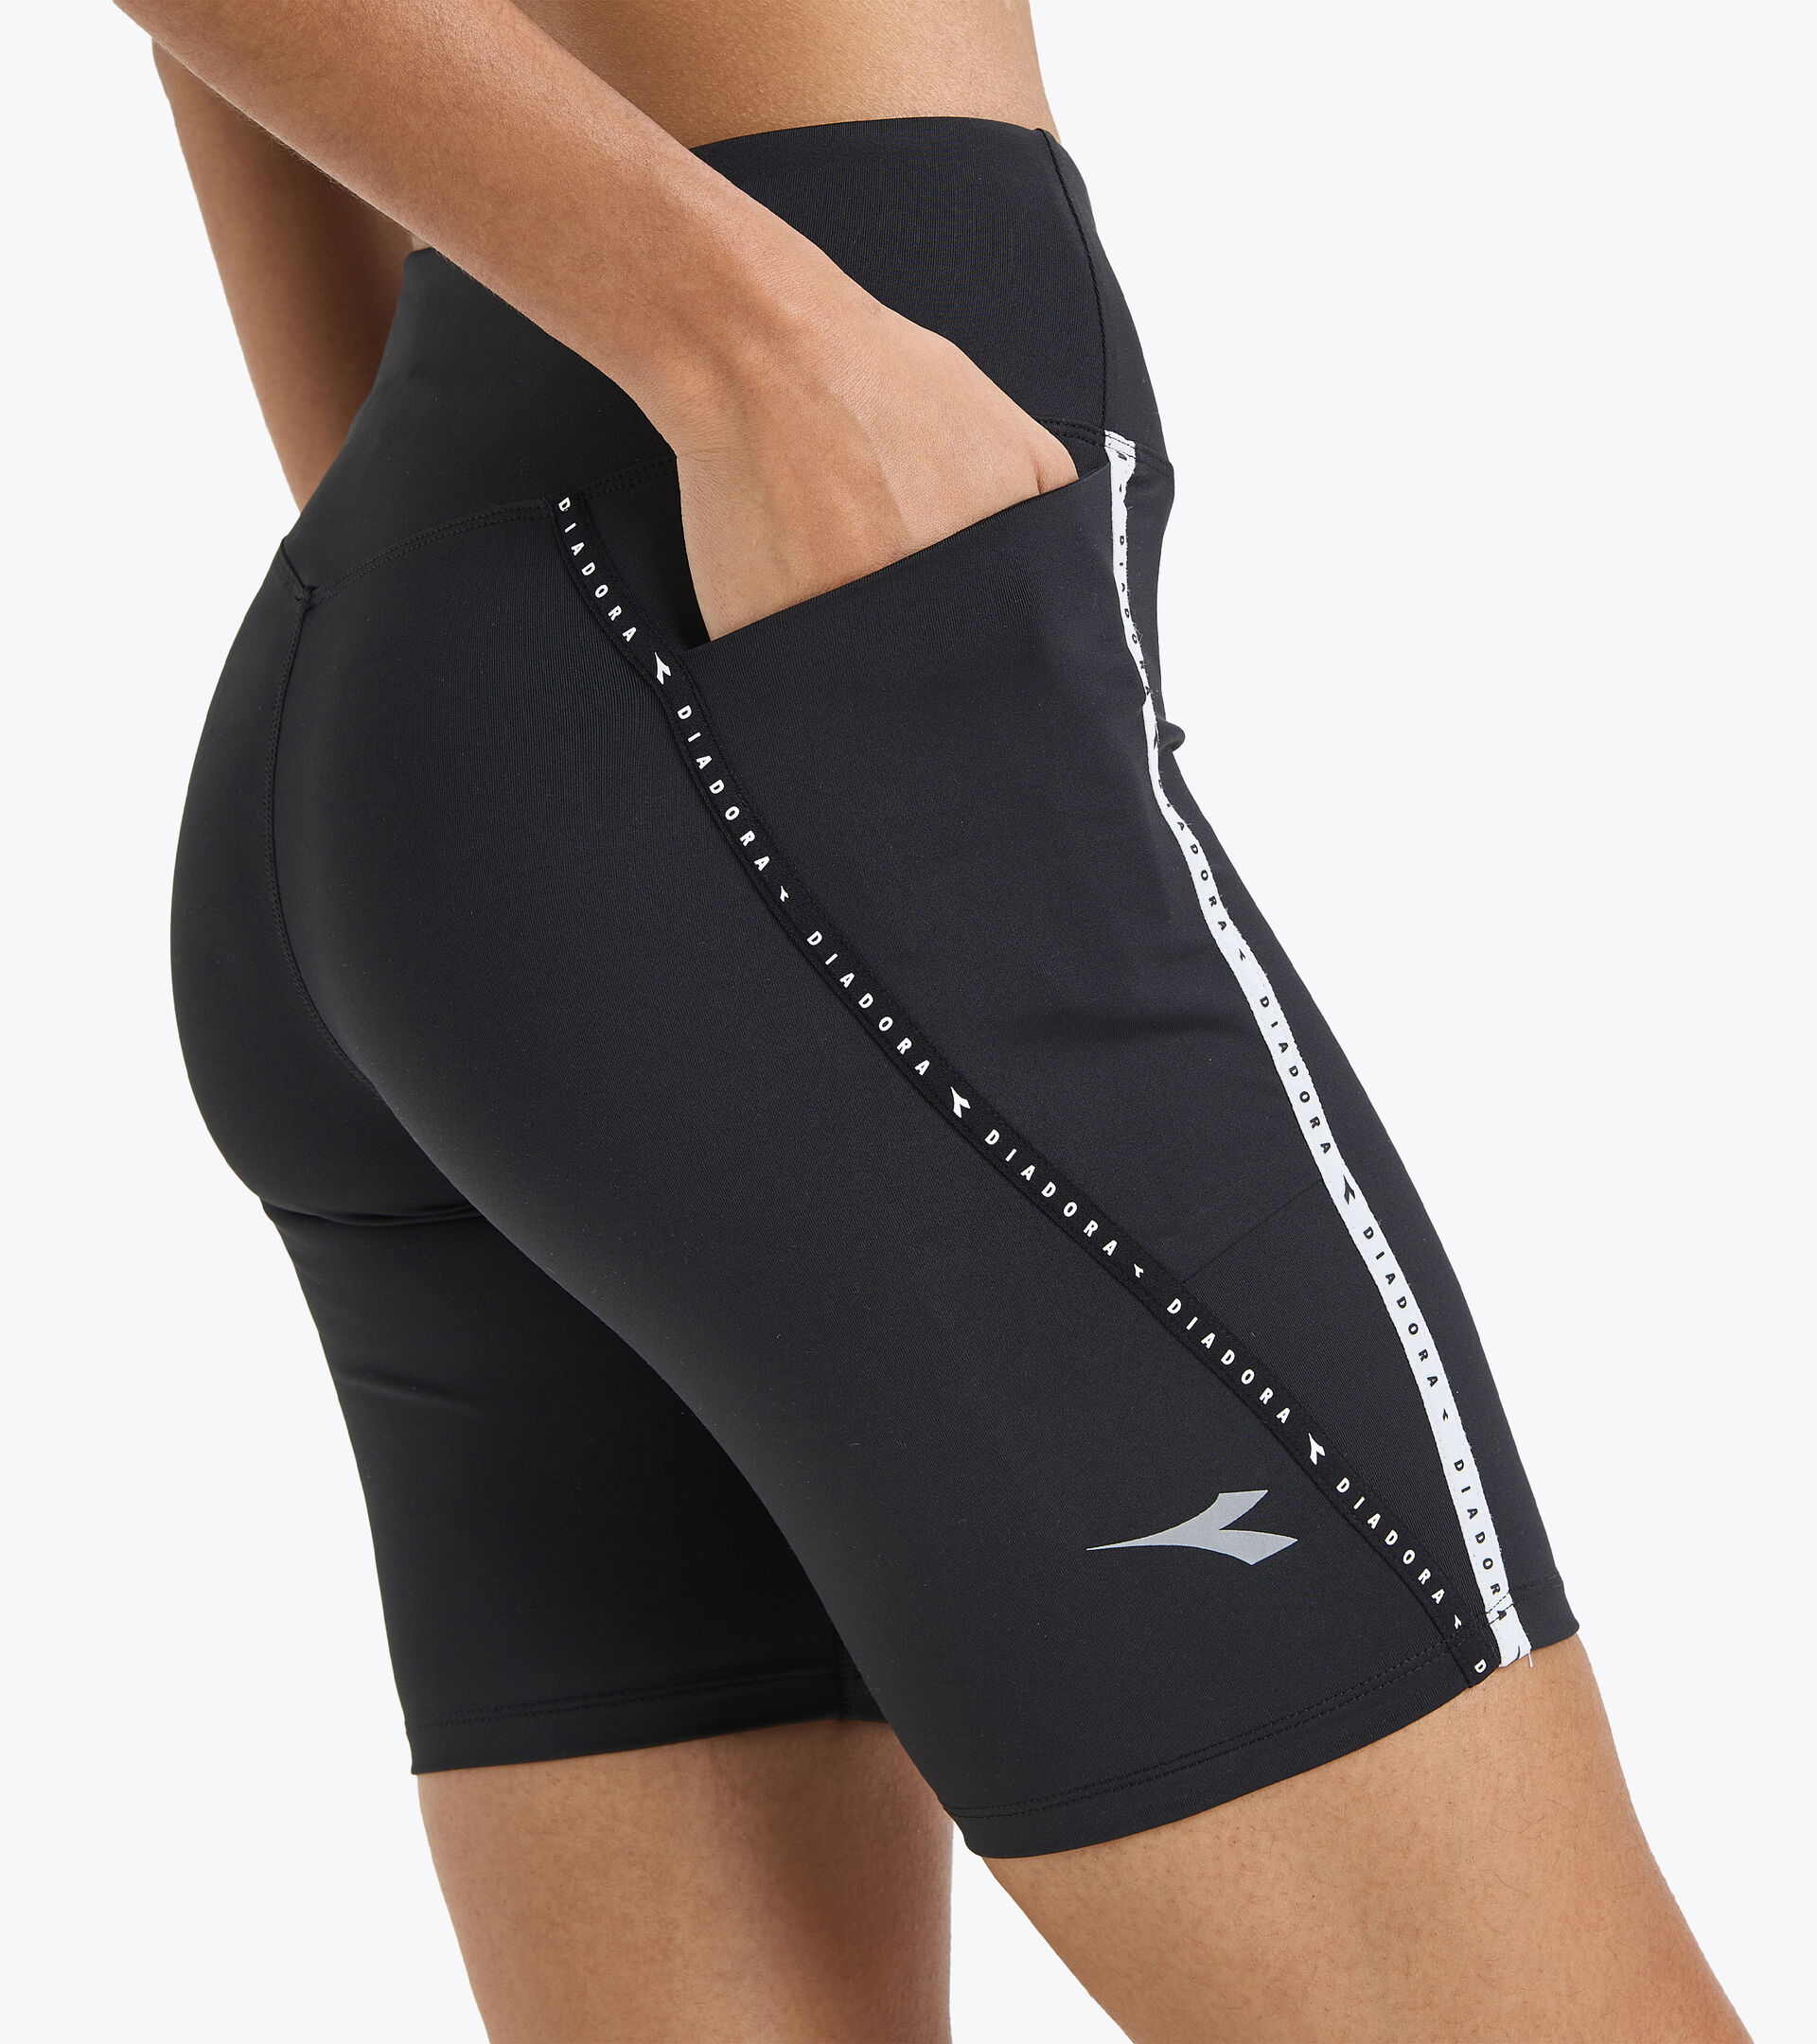 diadora cycling shorts small padded